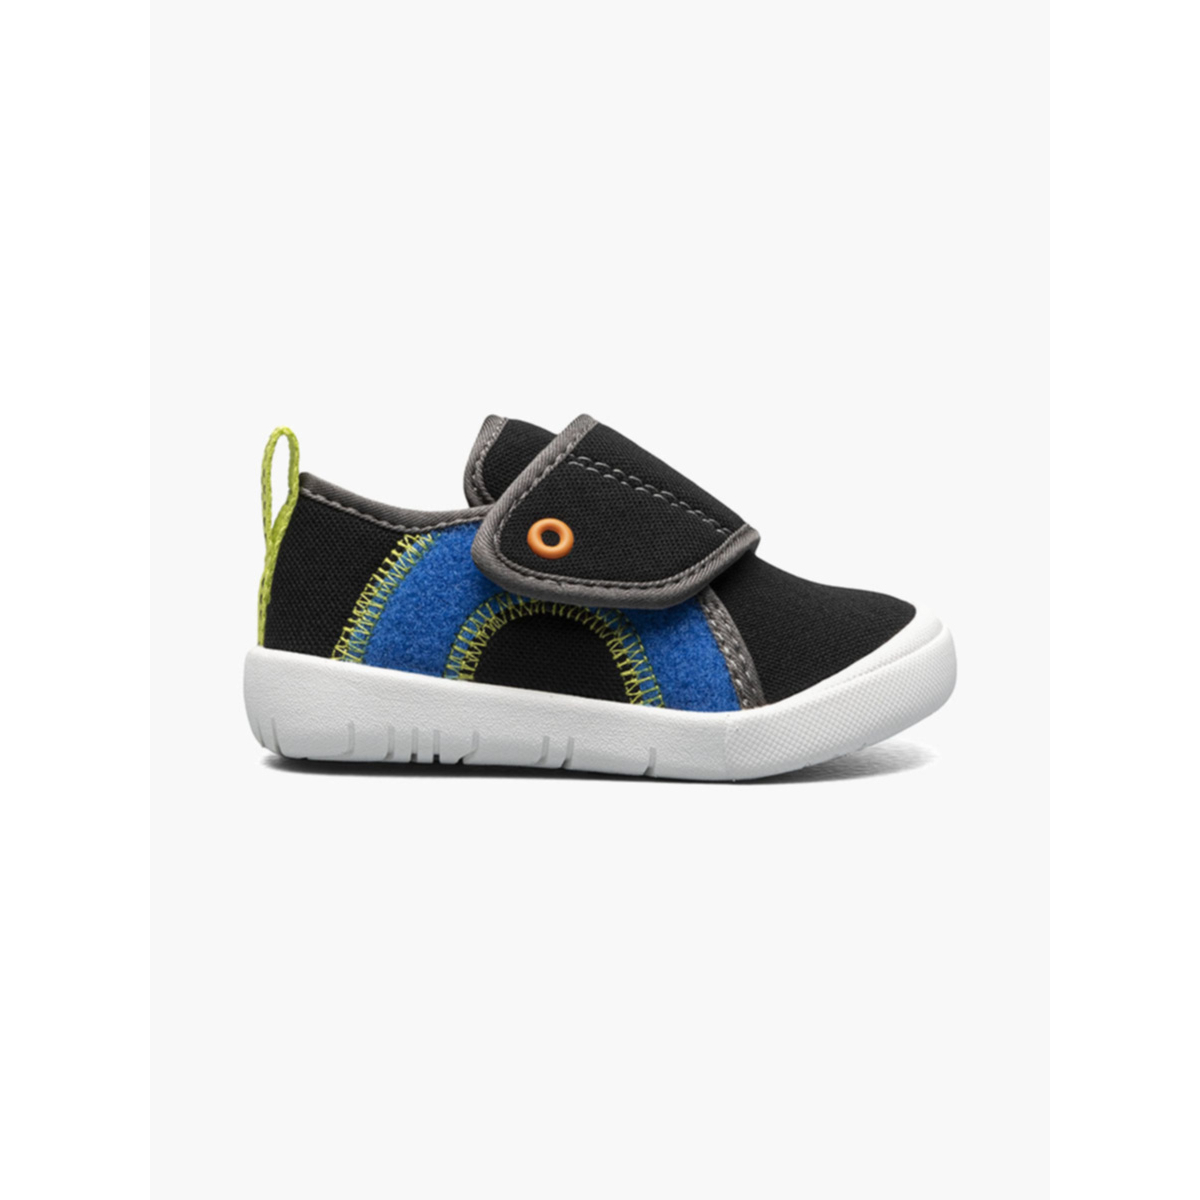 BOGS Unisex Baby Kicker Hook And Loop Shoe Sneaker Black Multi - 72811I-009 1 BLACK MULTI - BLACK MULTI, 6 Toddler